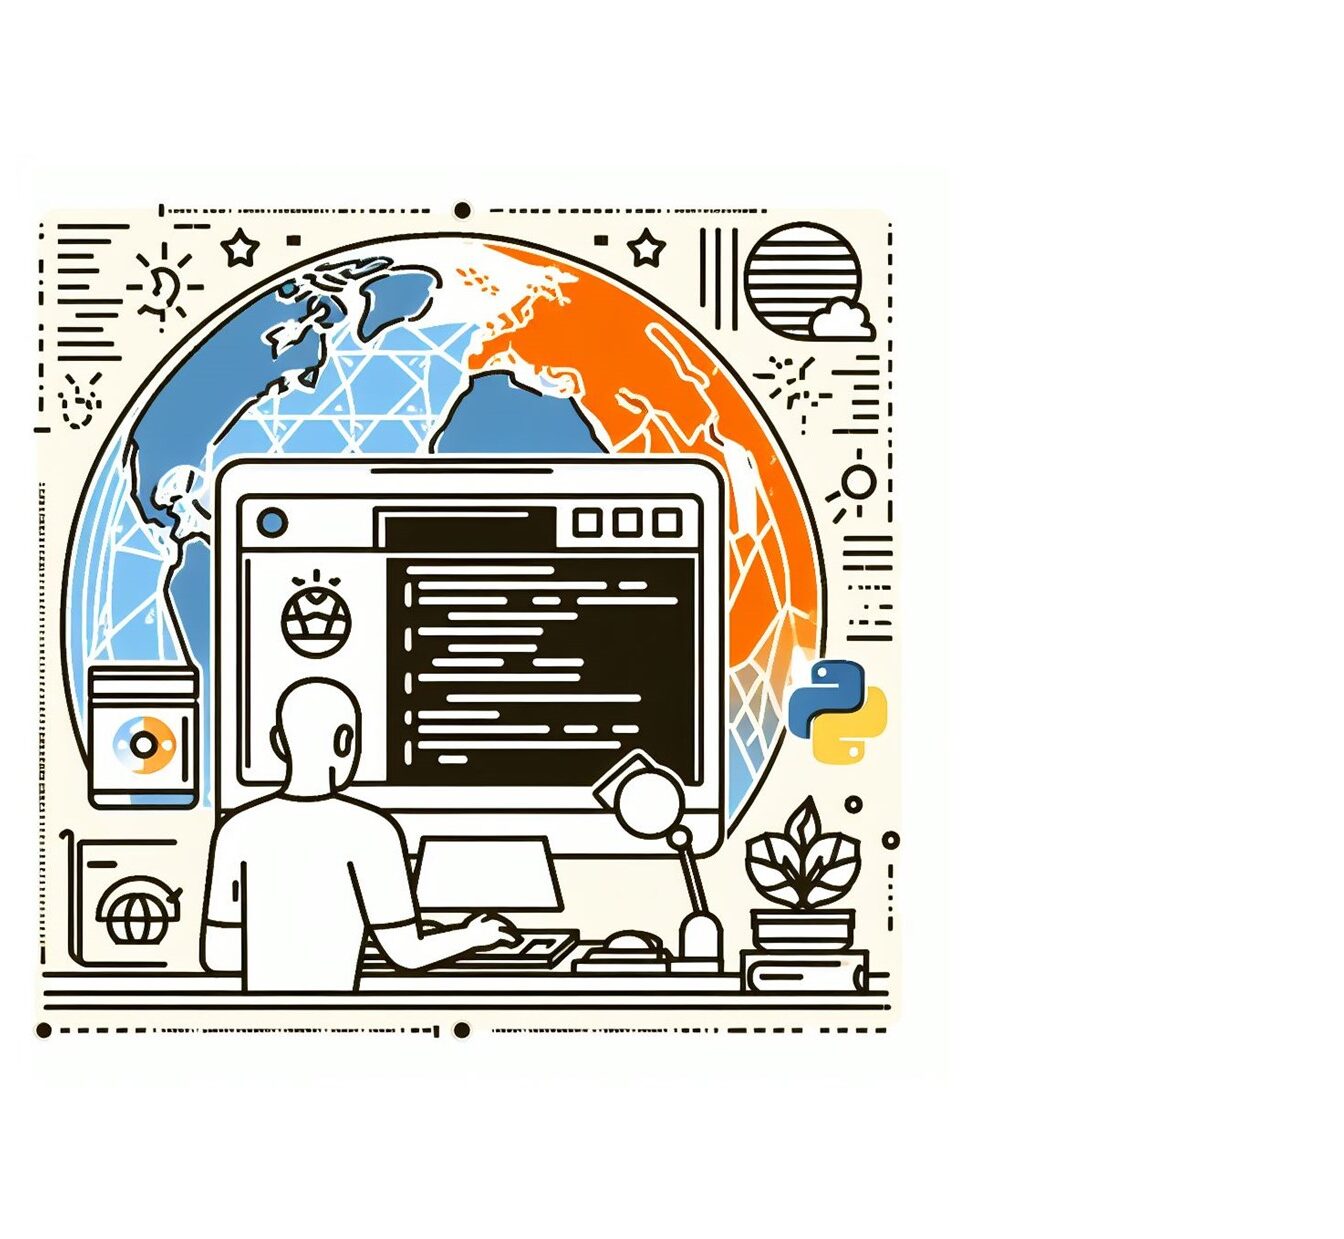 Lijntekening van een software-ontwikkelaar achter zijn computer. Met de aarde op de achtergrond. Gemaakt door DallE.